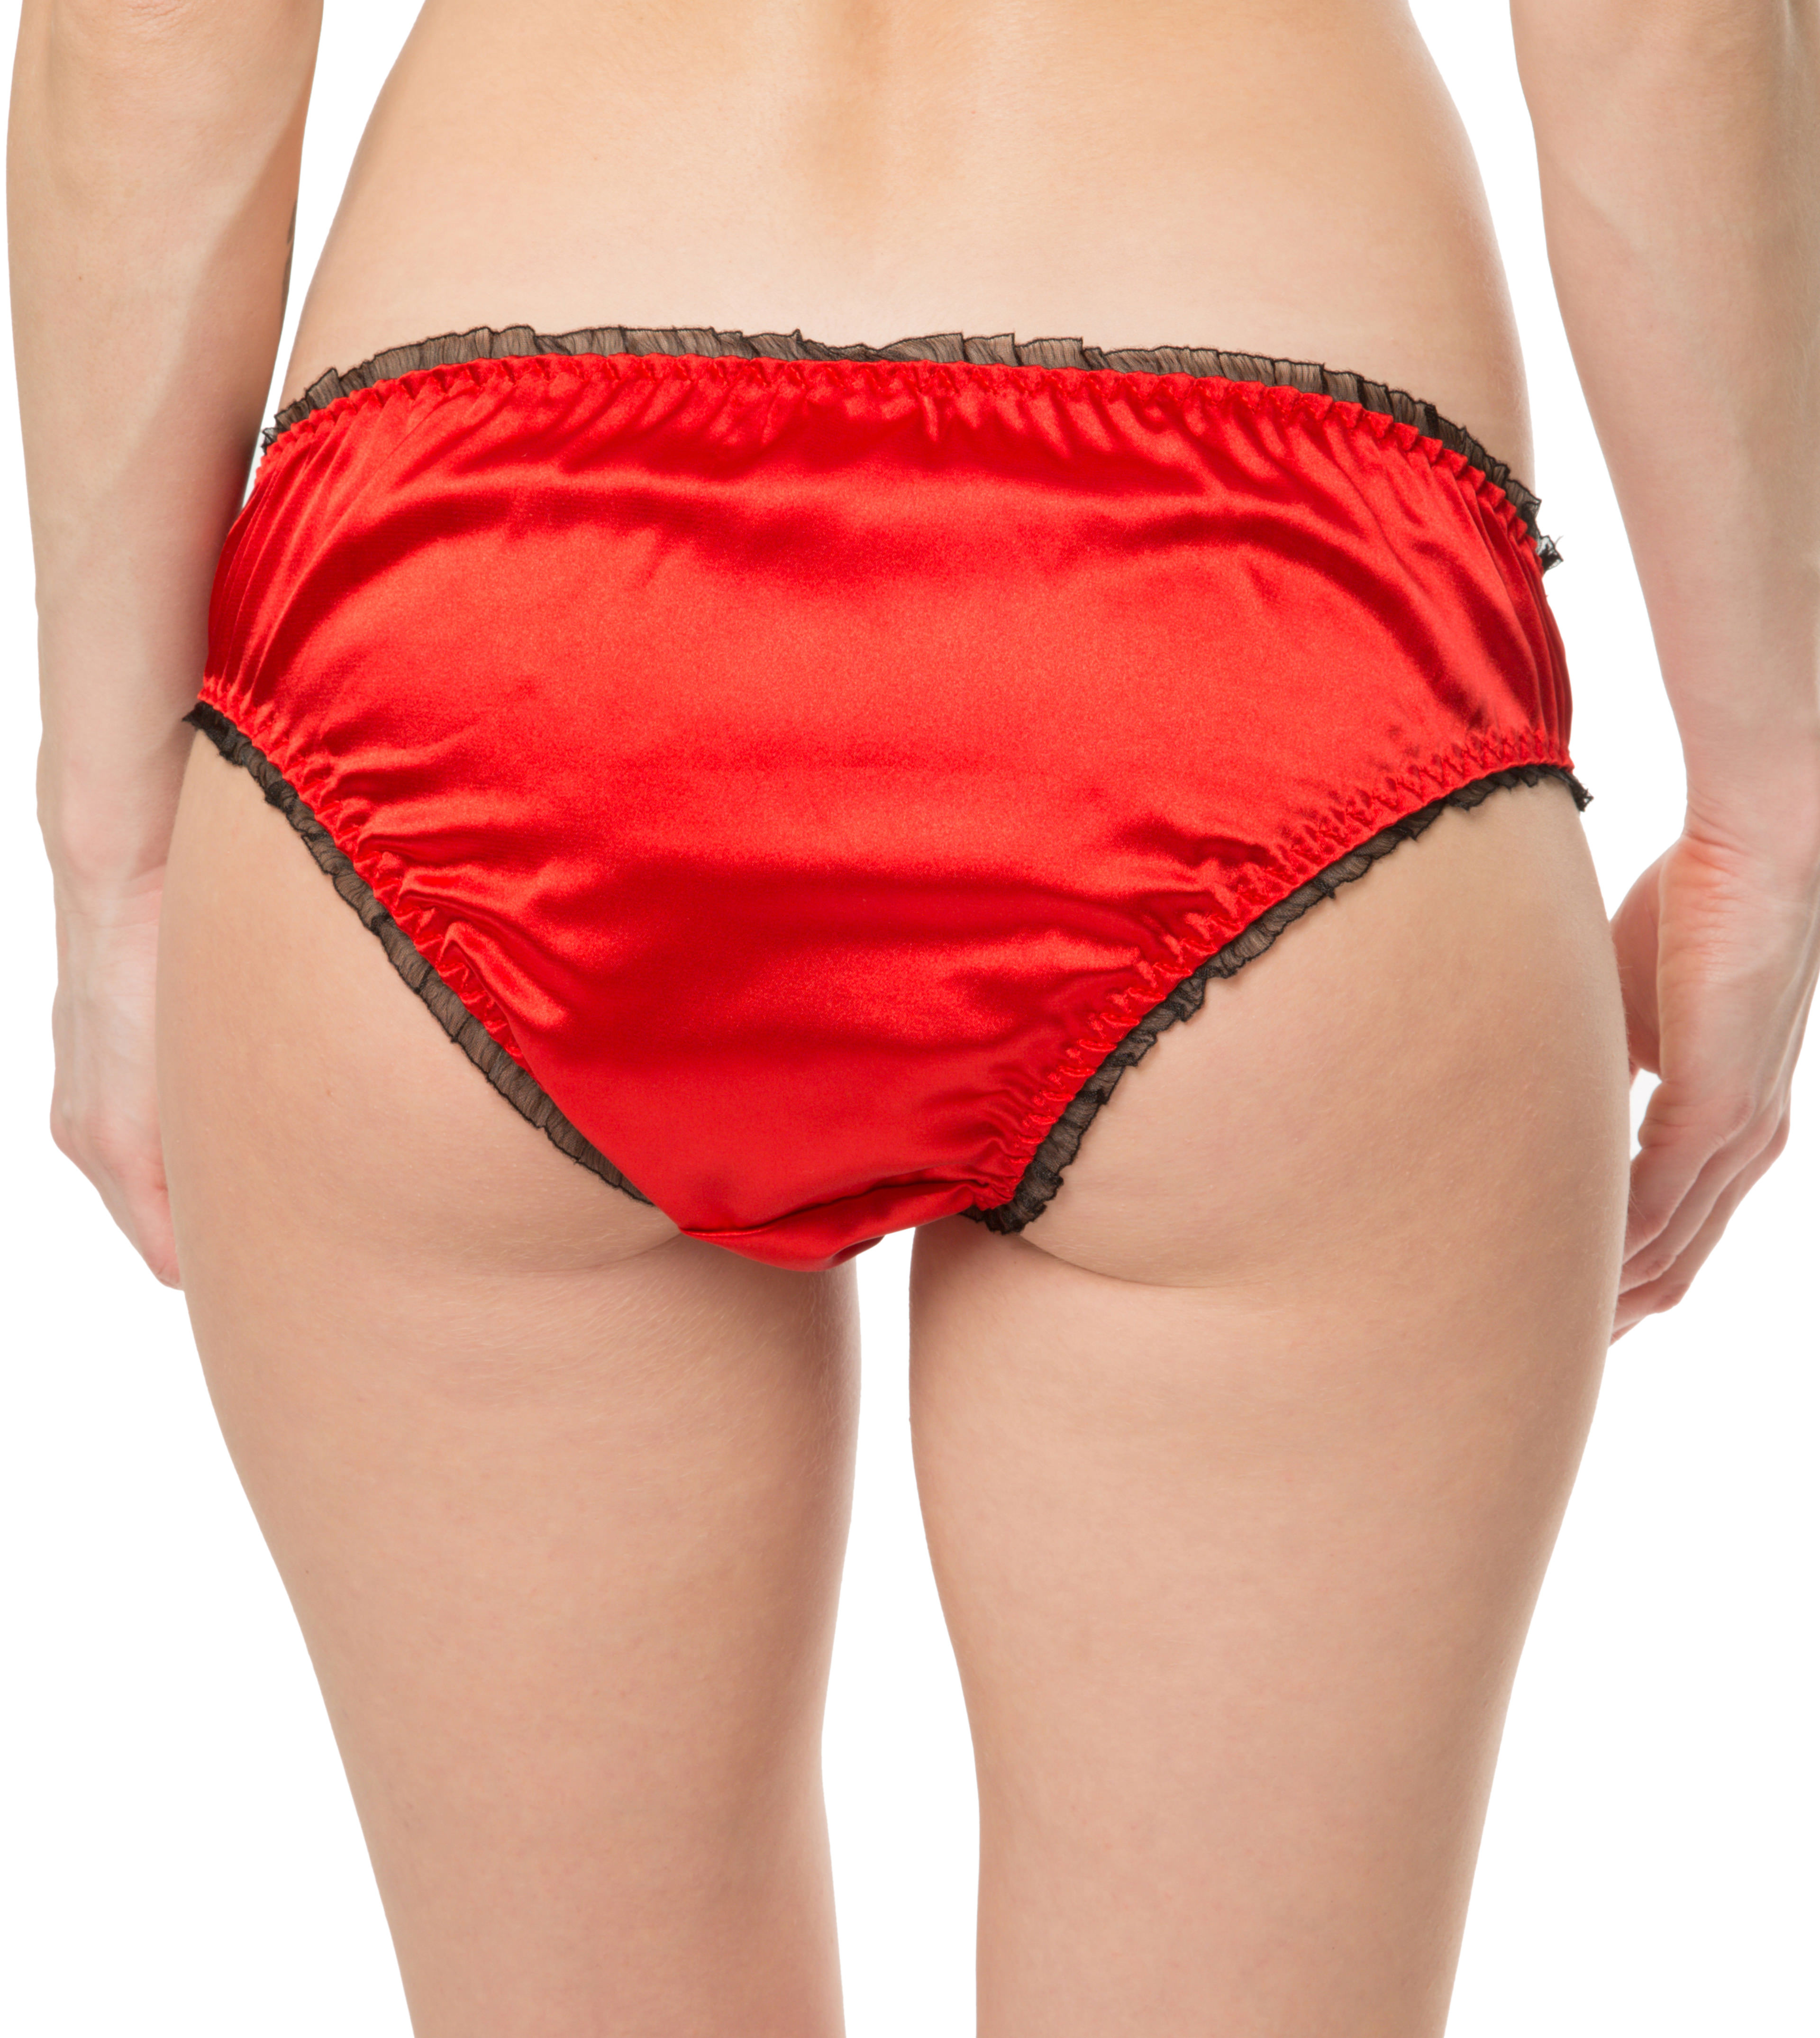 Red Satin Frilly Sissy Panties Bikini Knicker Underwear Briefs Size Ebay